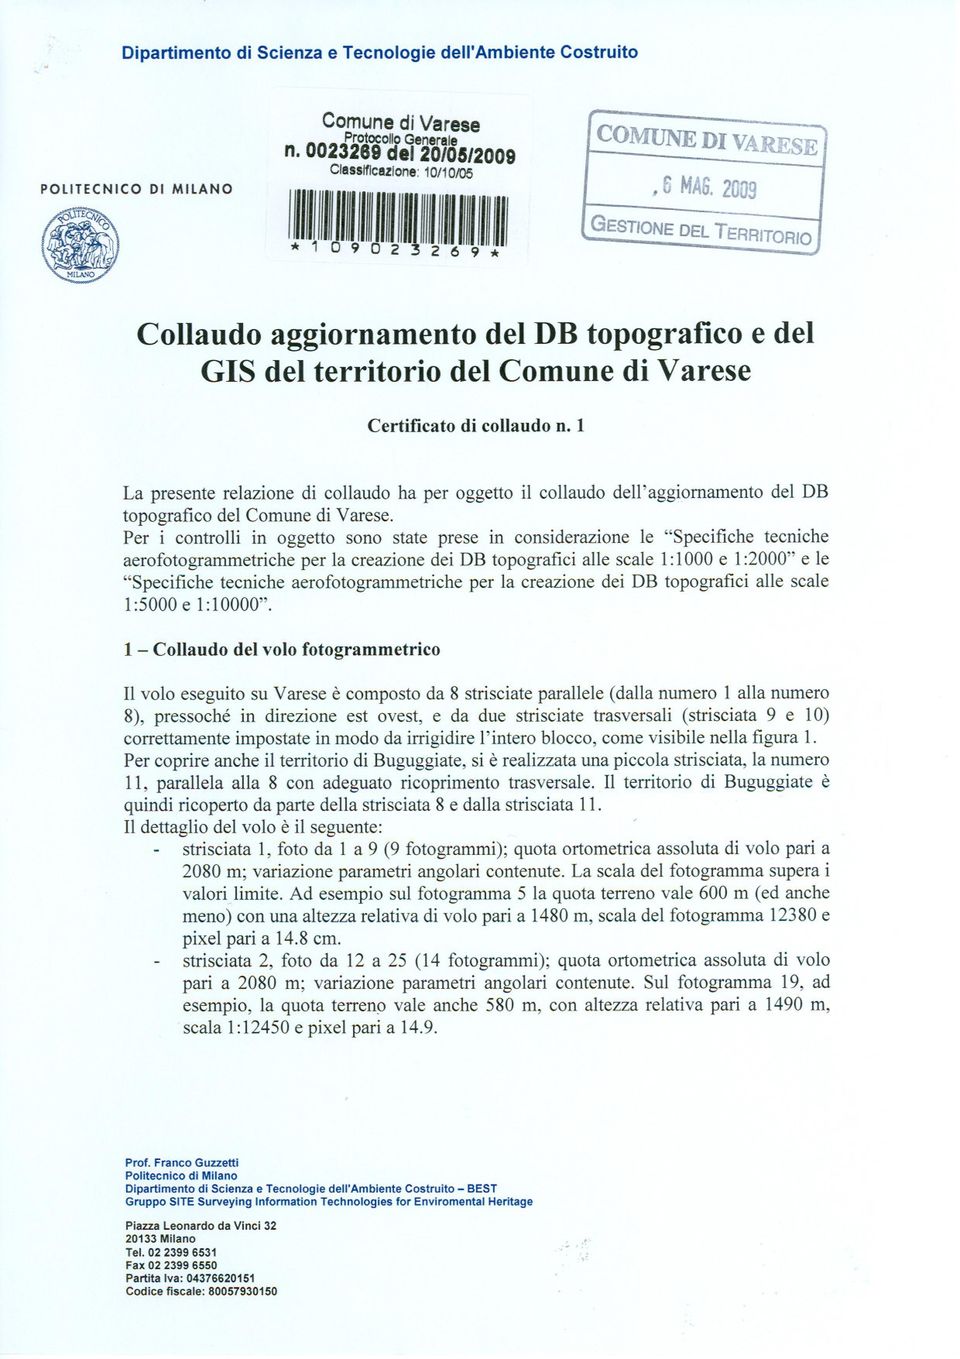 1 La presente relazione di collaudo ha per oggetto il collaudo dell'aggiornamento del DB topografico del Comune di Varese.